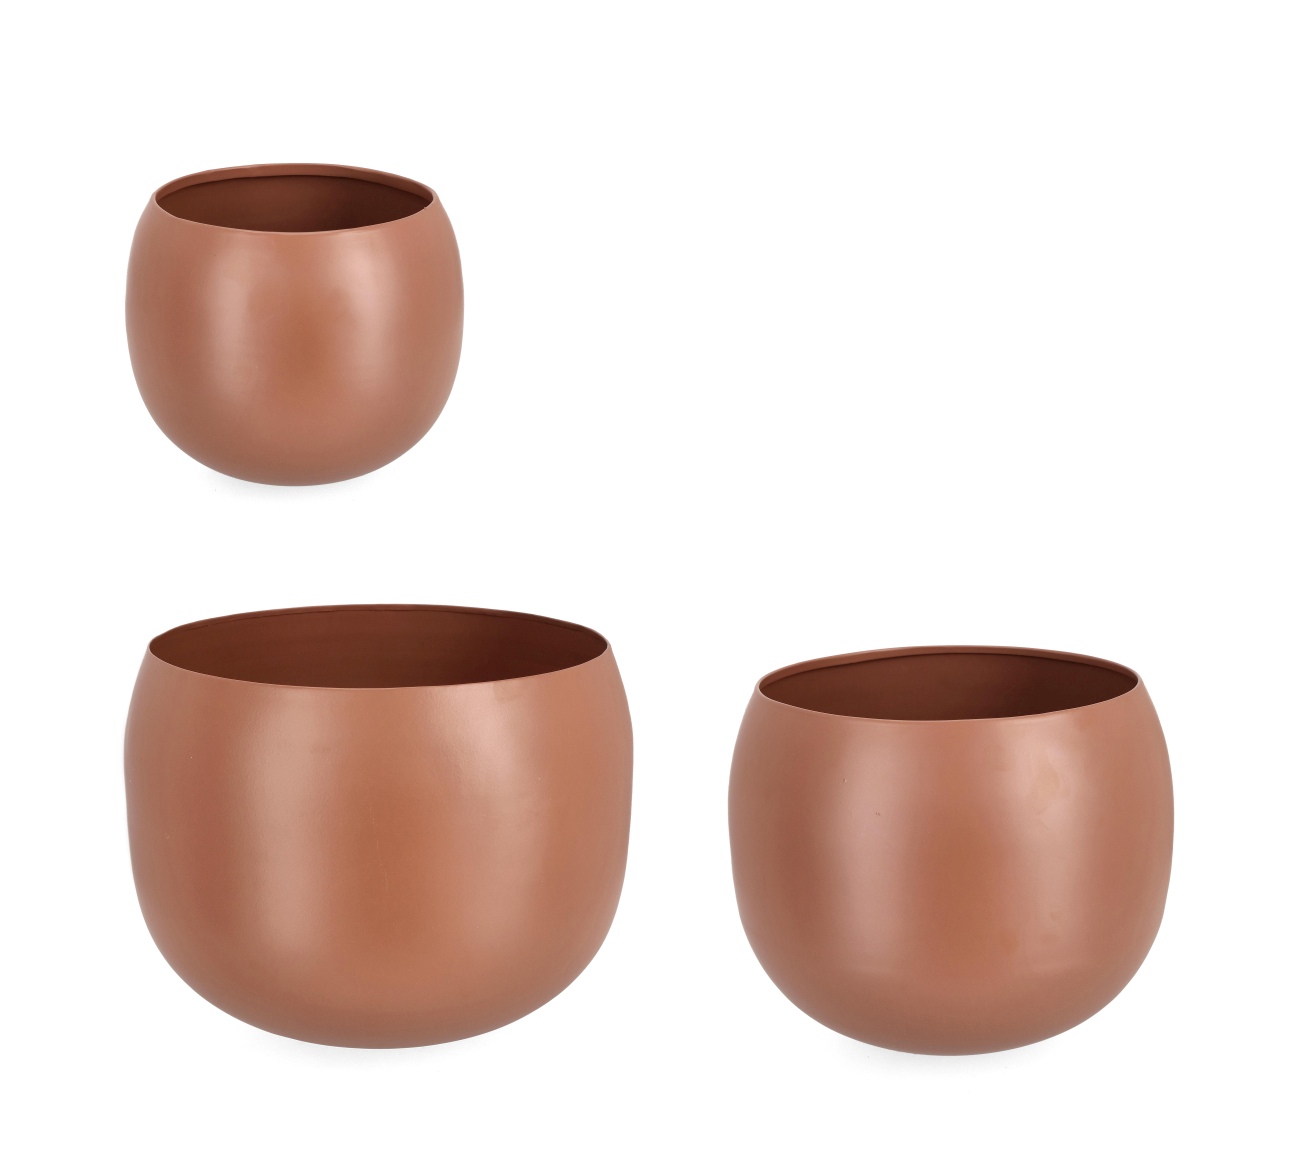 Die Outdoor Vase Keyra überzeugt mit ihrem modernen Design. Gefertigt wurde sie aus Metall, welches einen braunen Farbton besitzt. Die Vase besteht aus einem 3er Set in unterschiedlichen Größen.